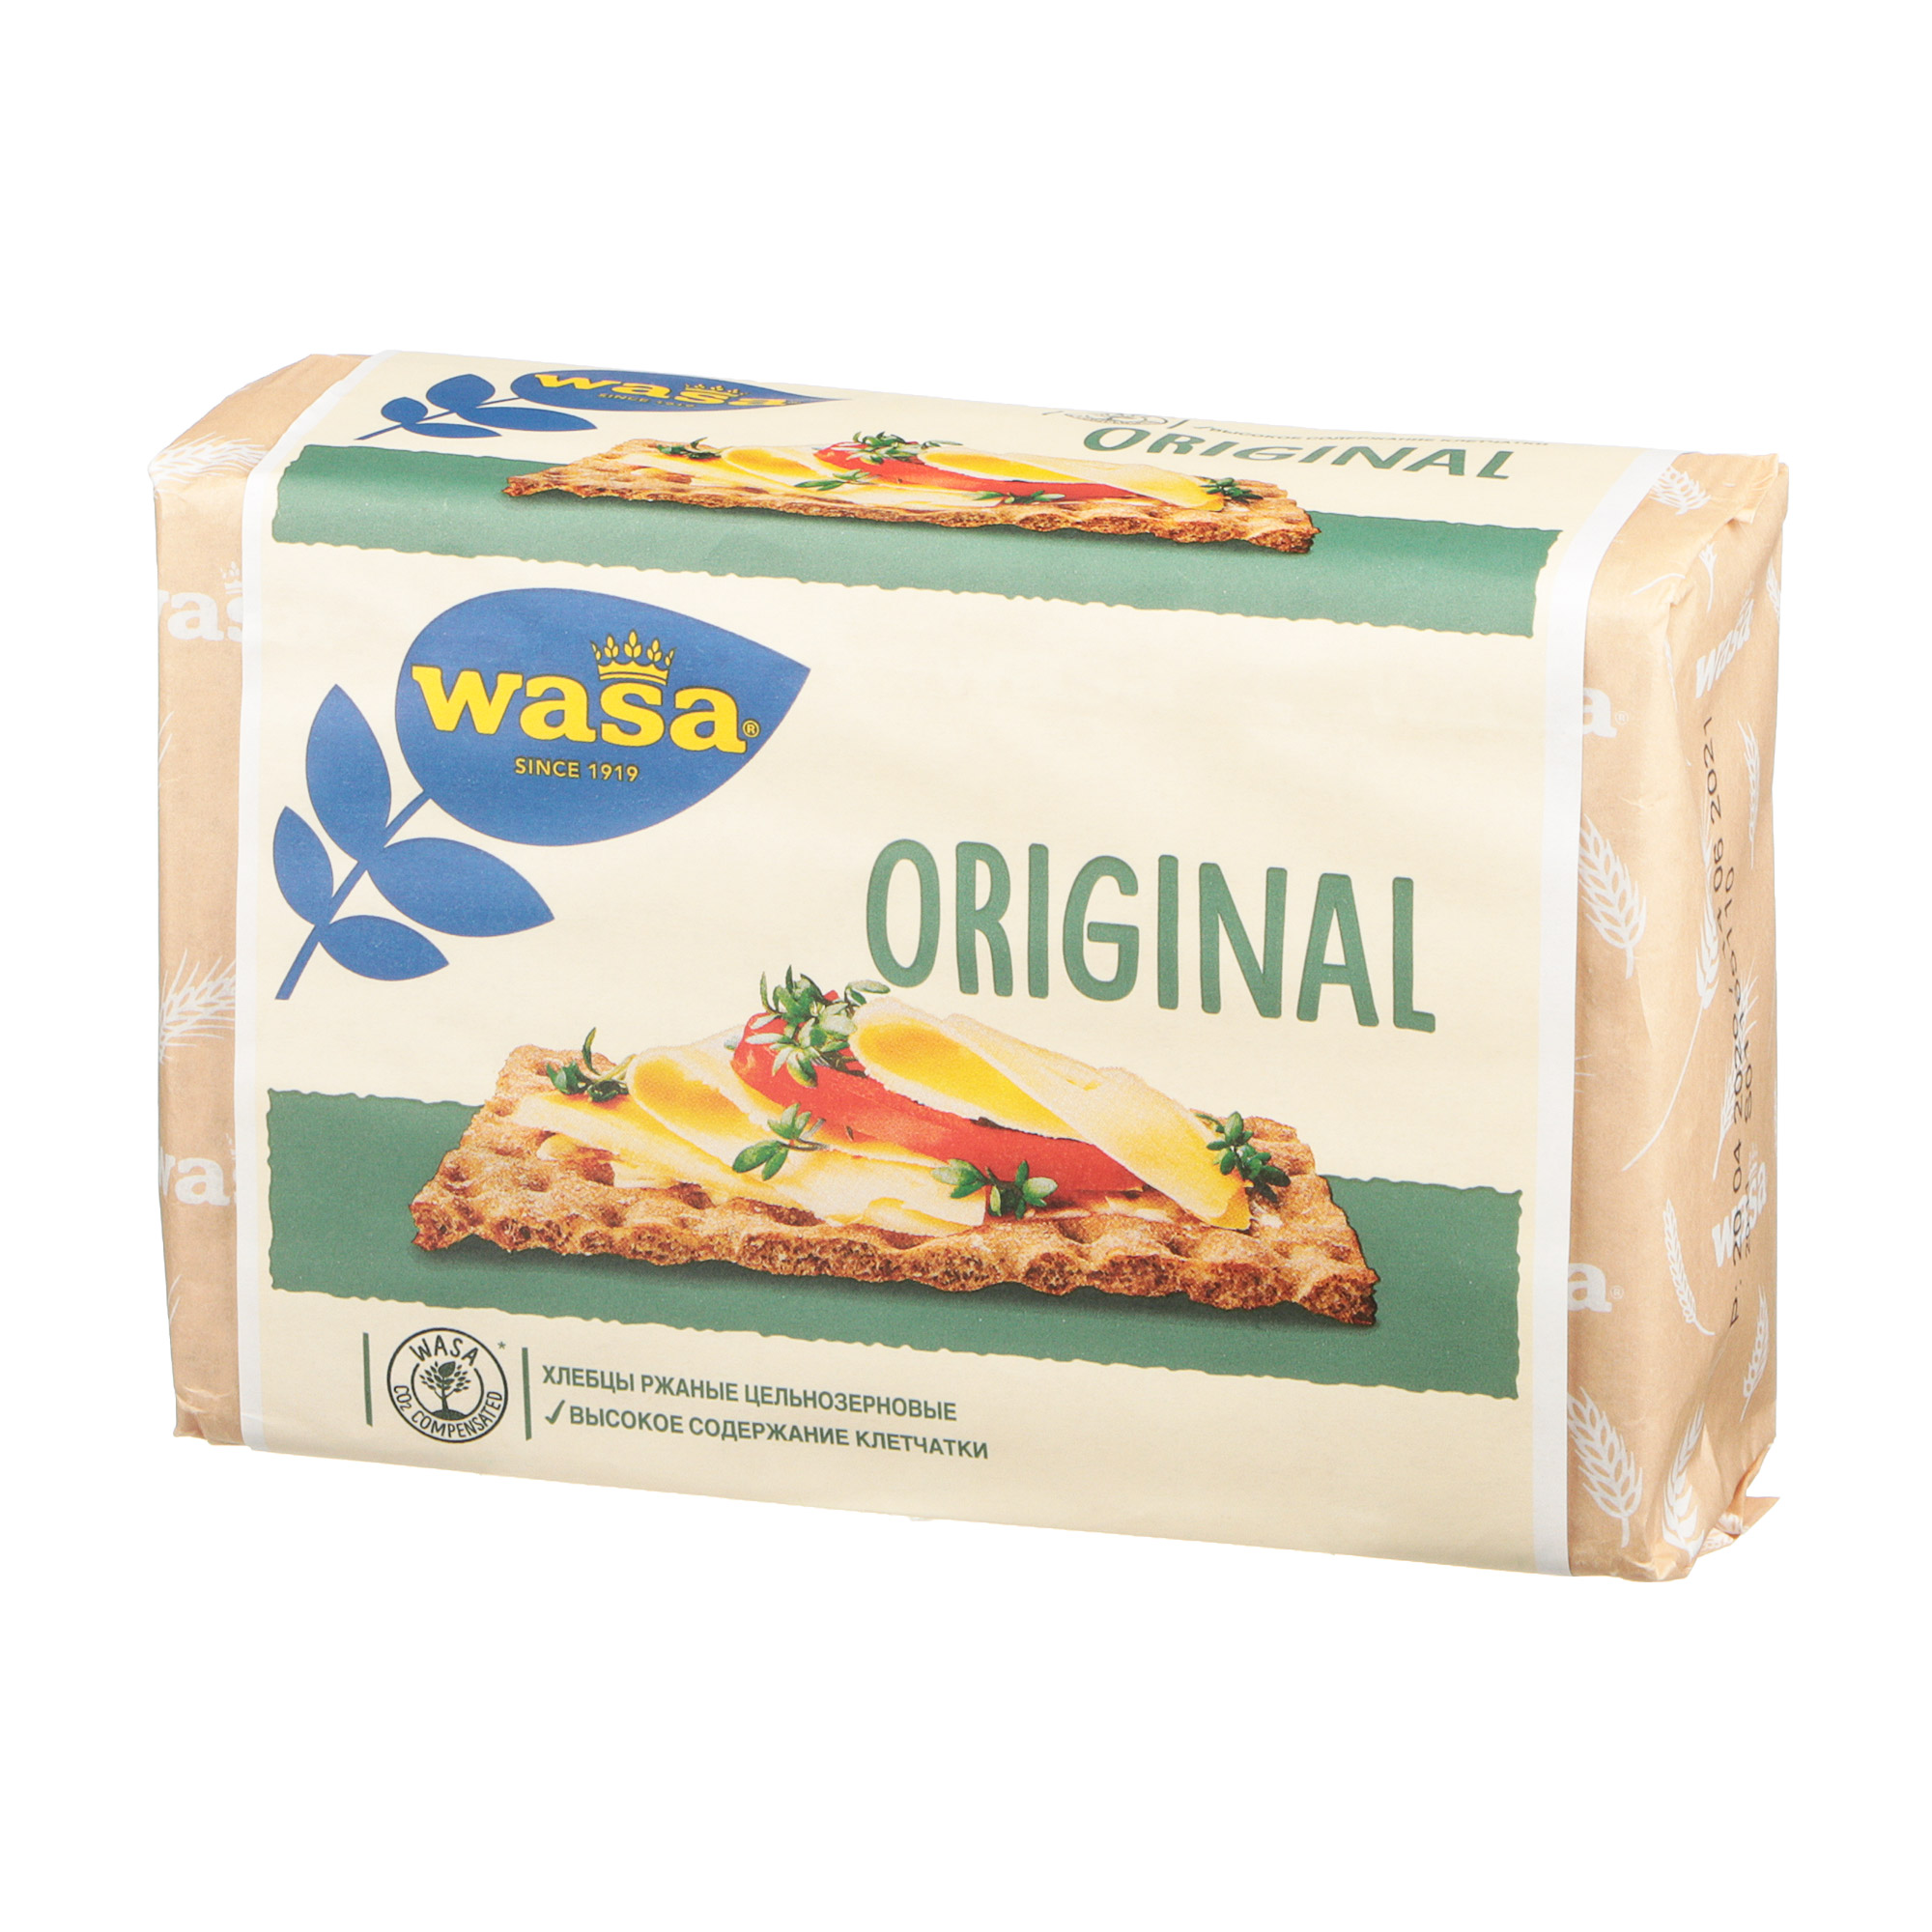 Хлебцы ржаные Wasa Original цельнозерновые 275 г хлебцы ржаные цельнозерновые wasa с добавлением молока 230 гр